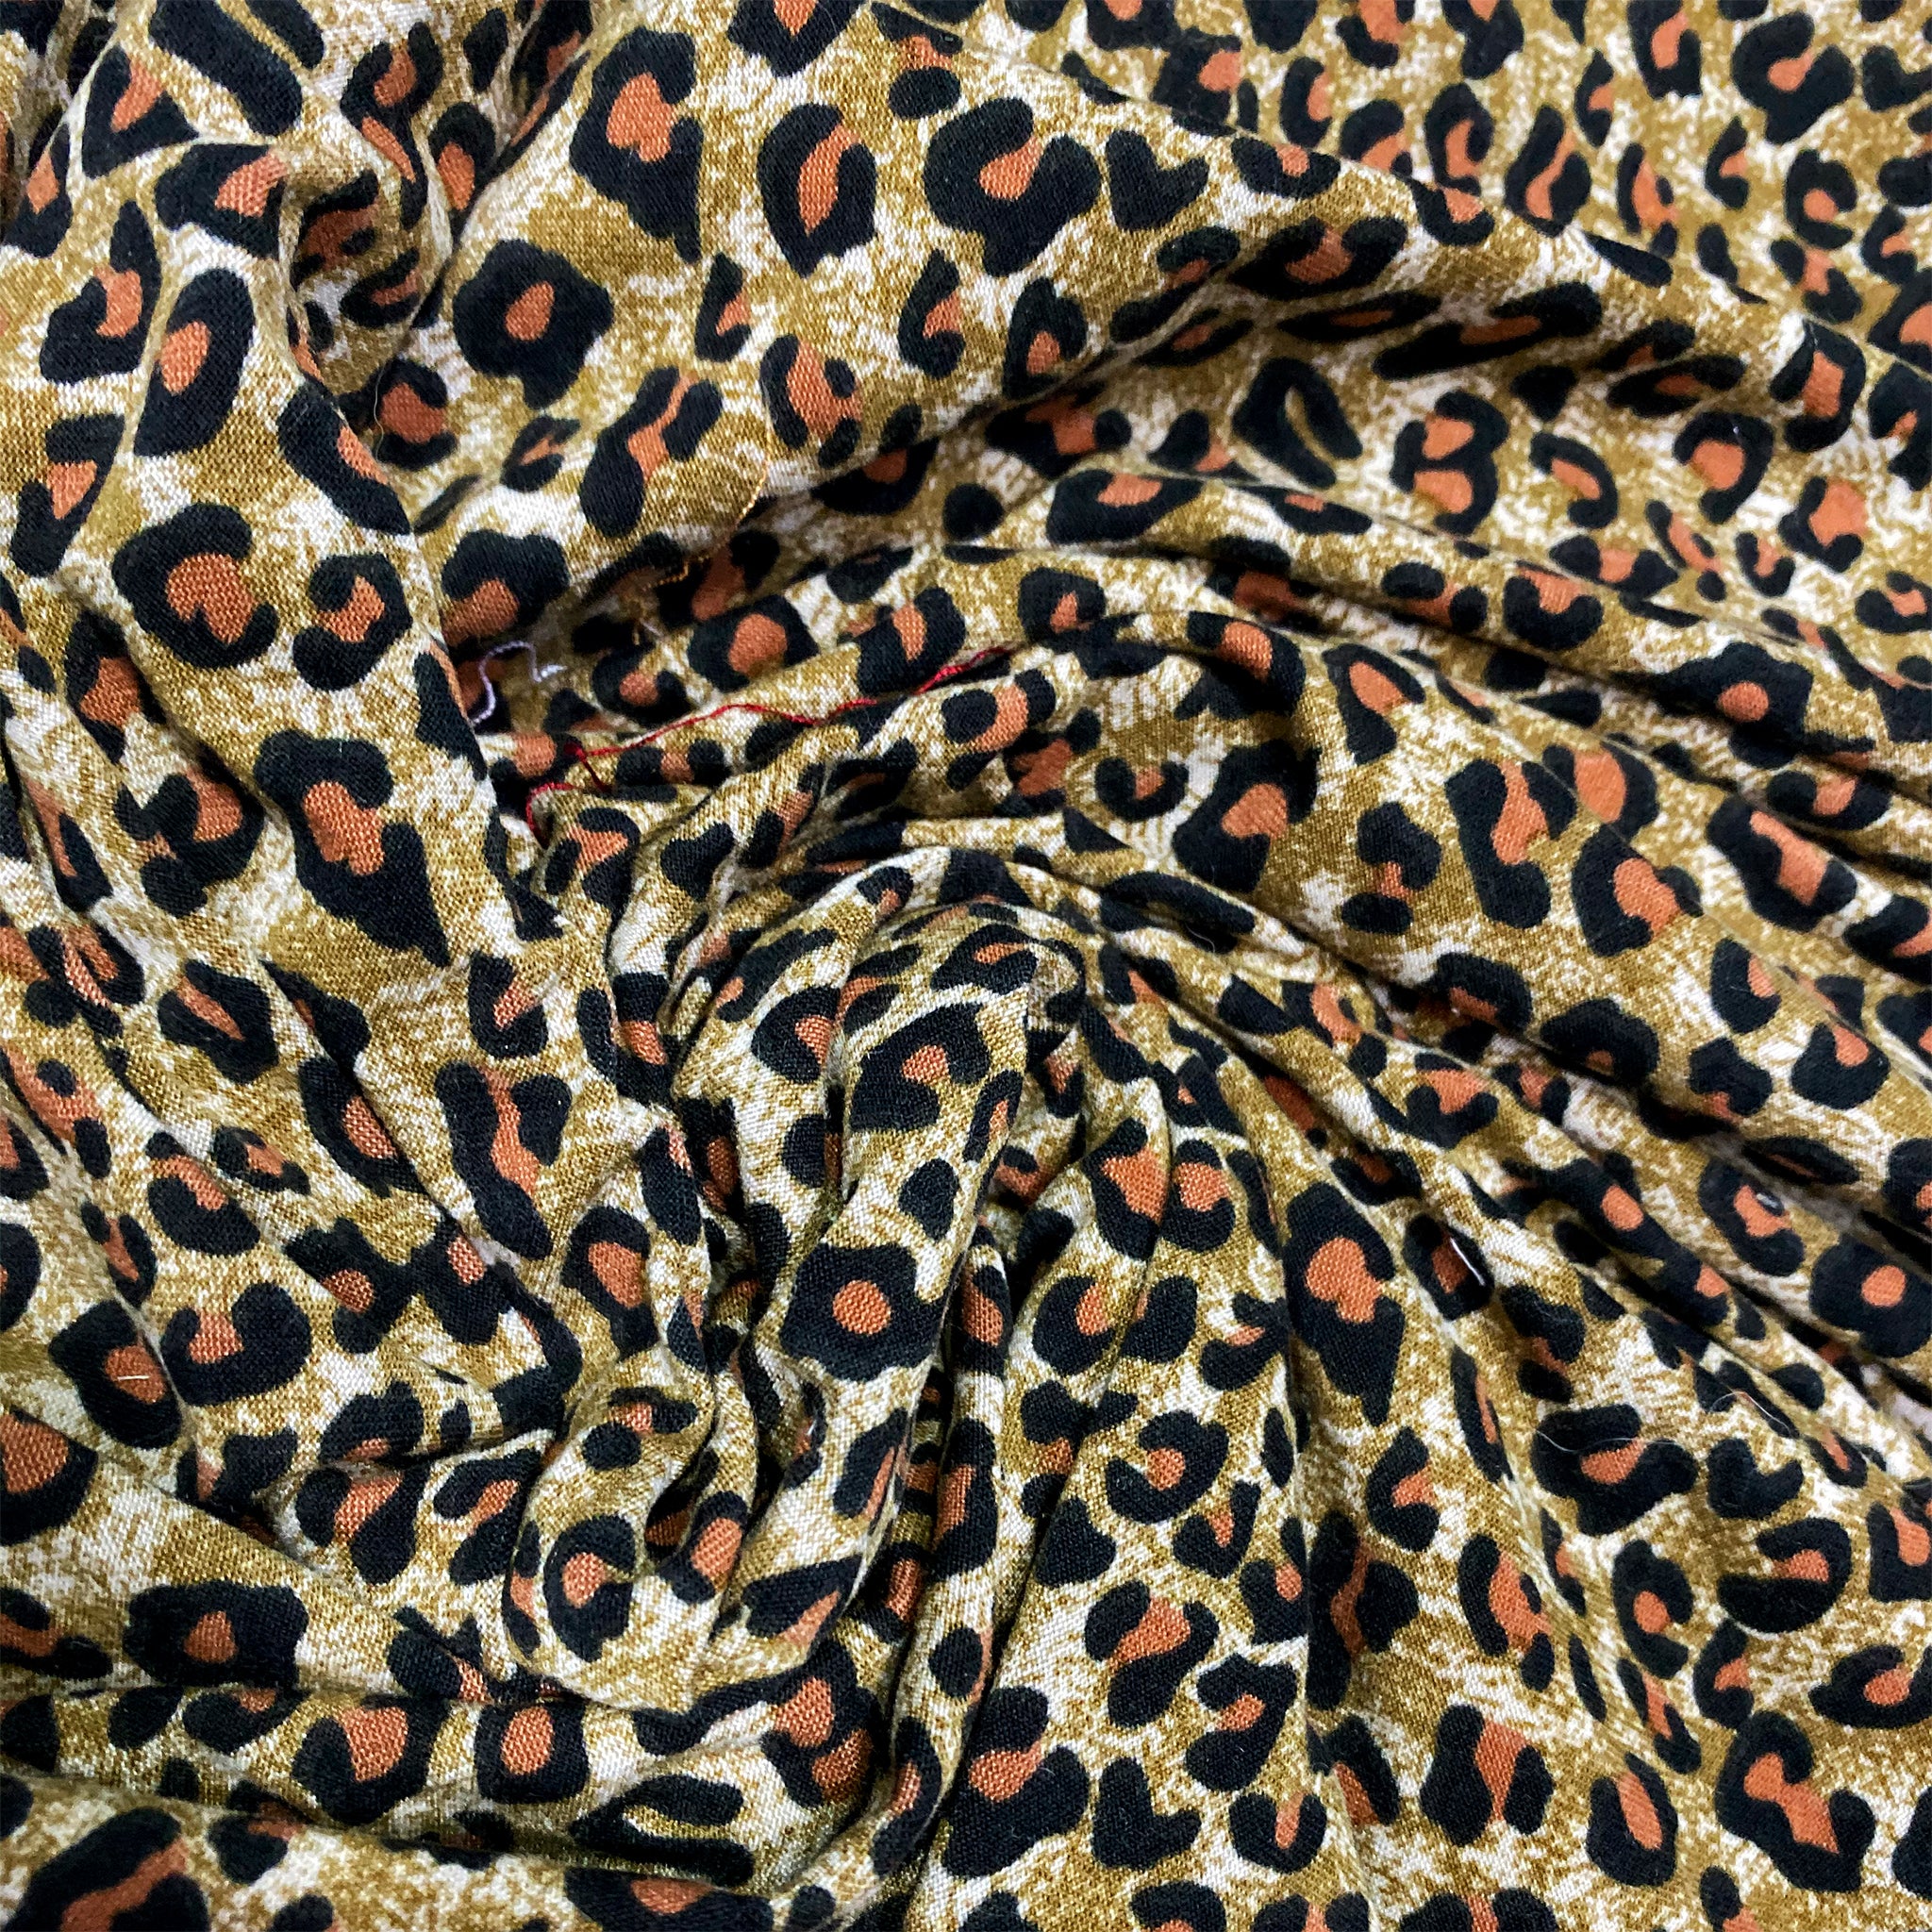 Leopard Print Hosiery